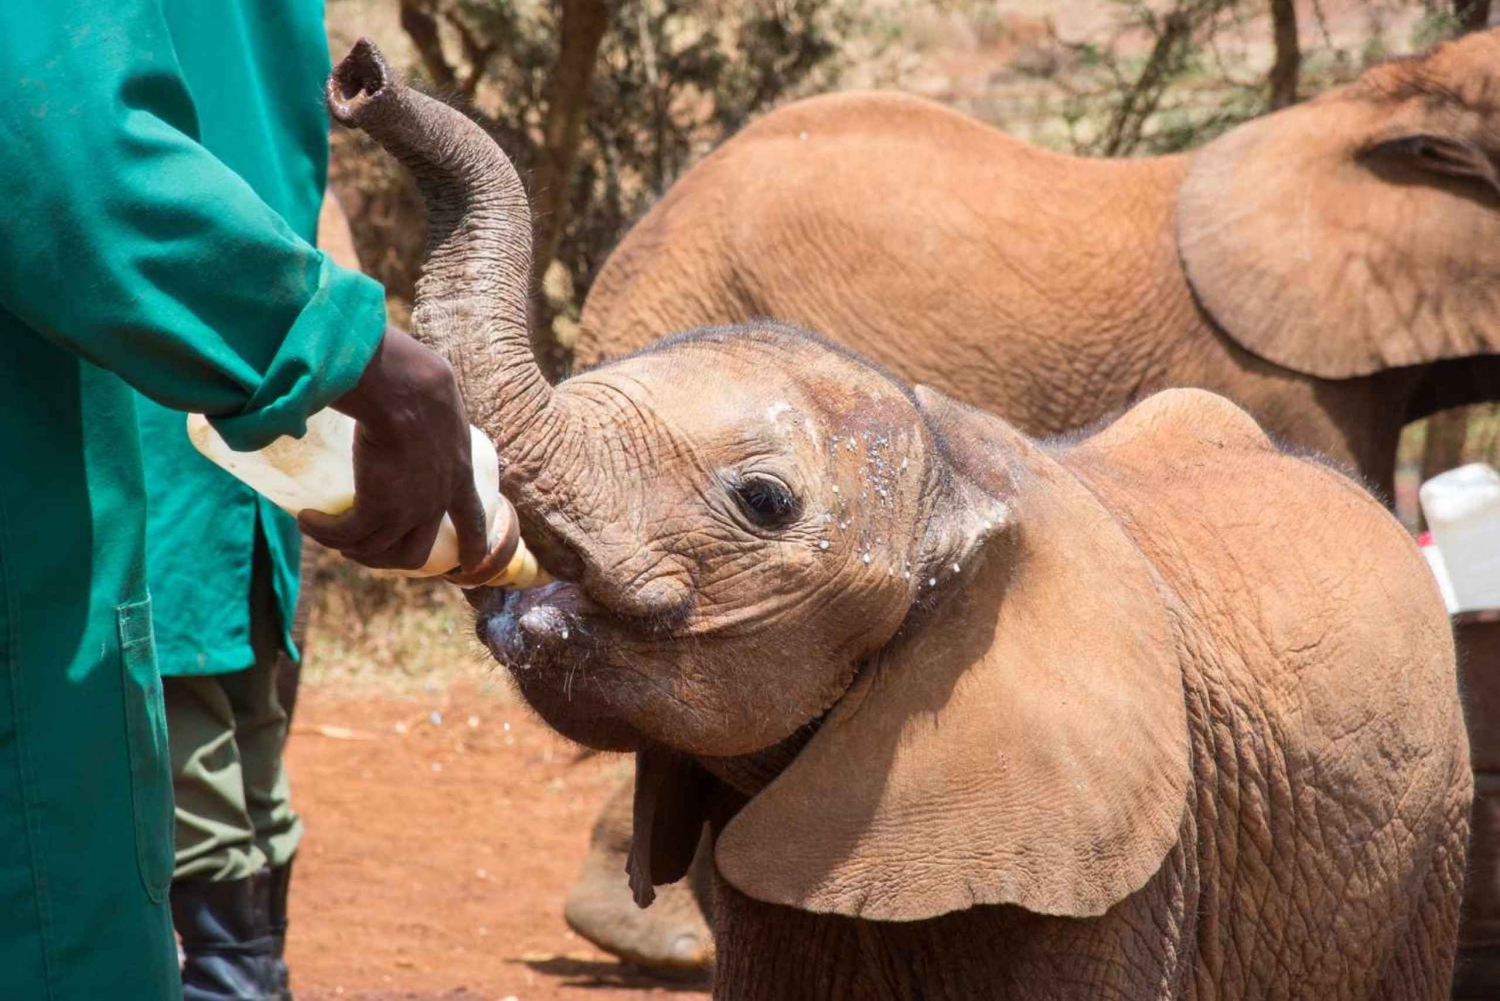 Nairobi : visite du parc national, du centre des bébés éléphants et des girafes